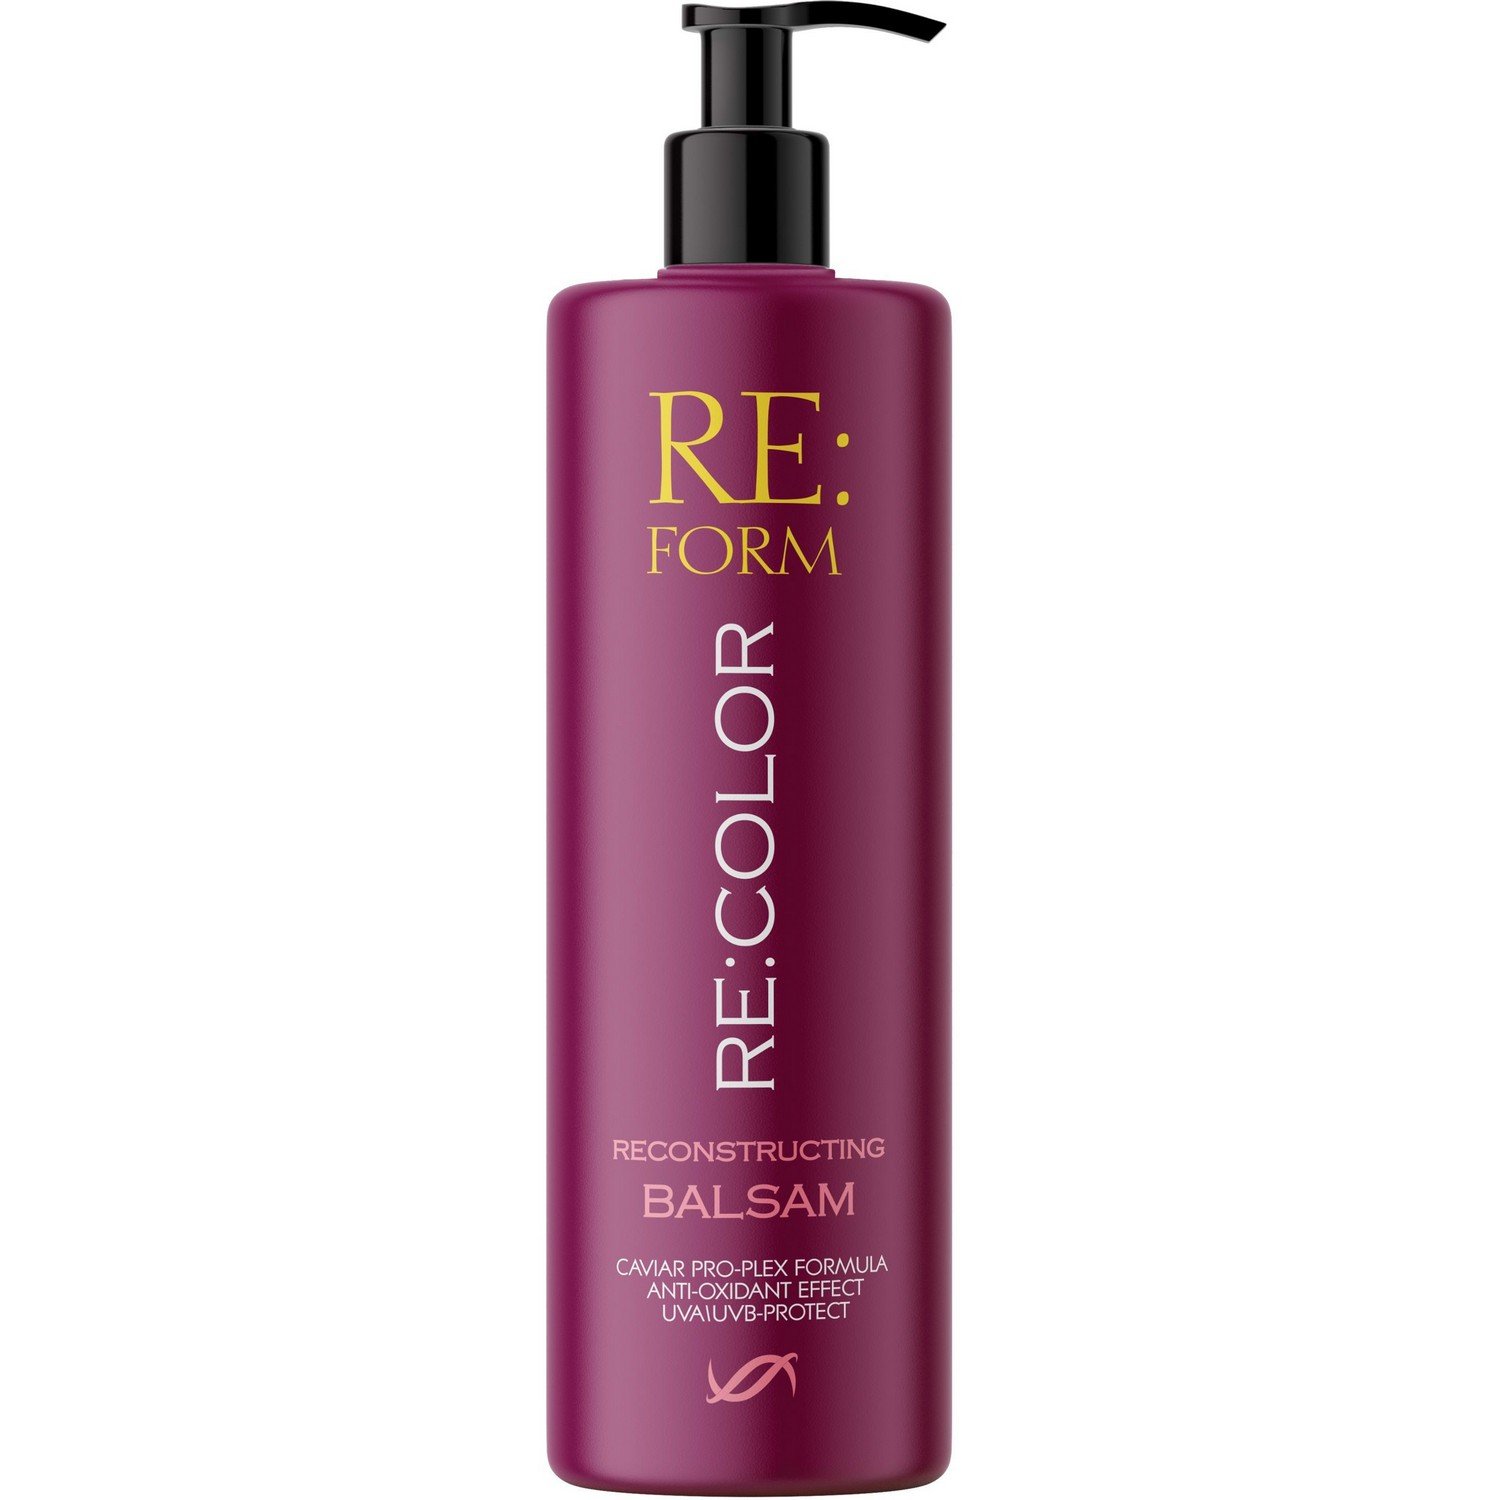 Реконструирующий бальзам Re:form Re:color Сохранение цвета и восстановление окрашенных волос, 400 мл - фото 1